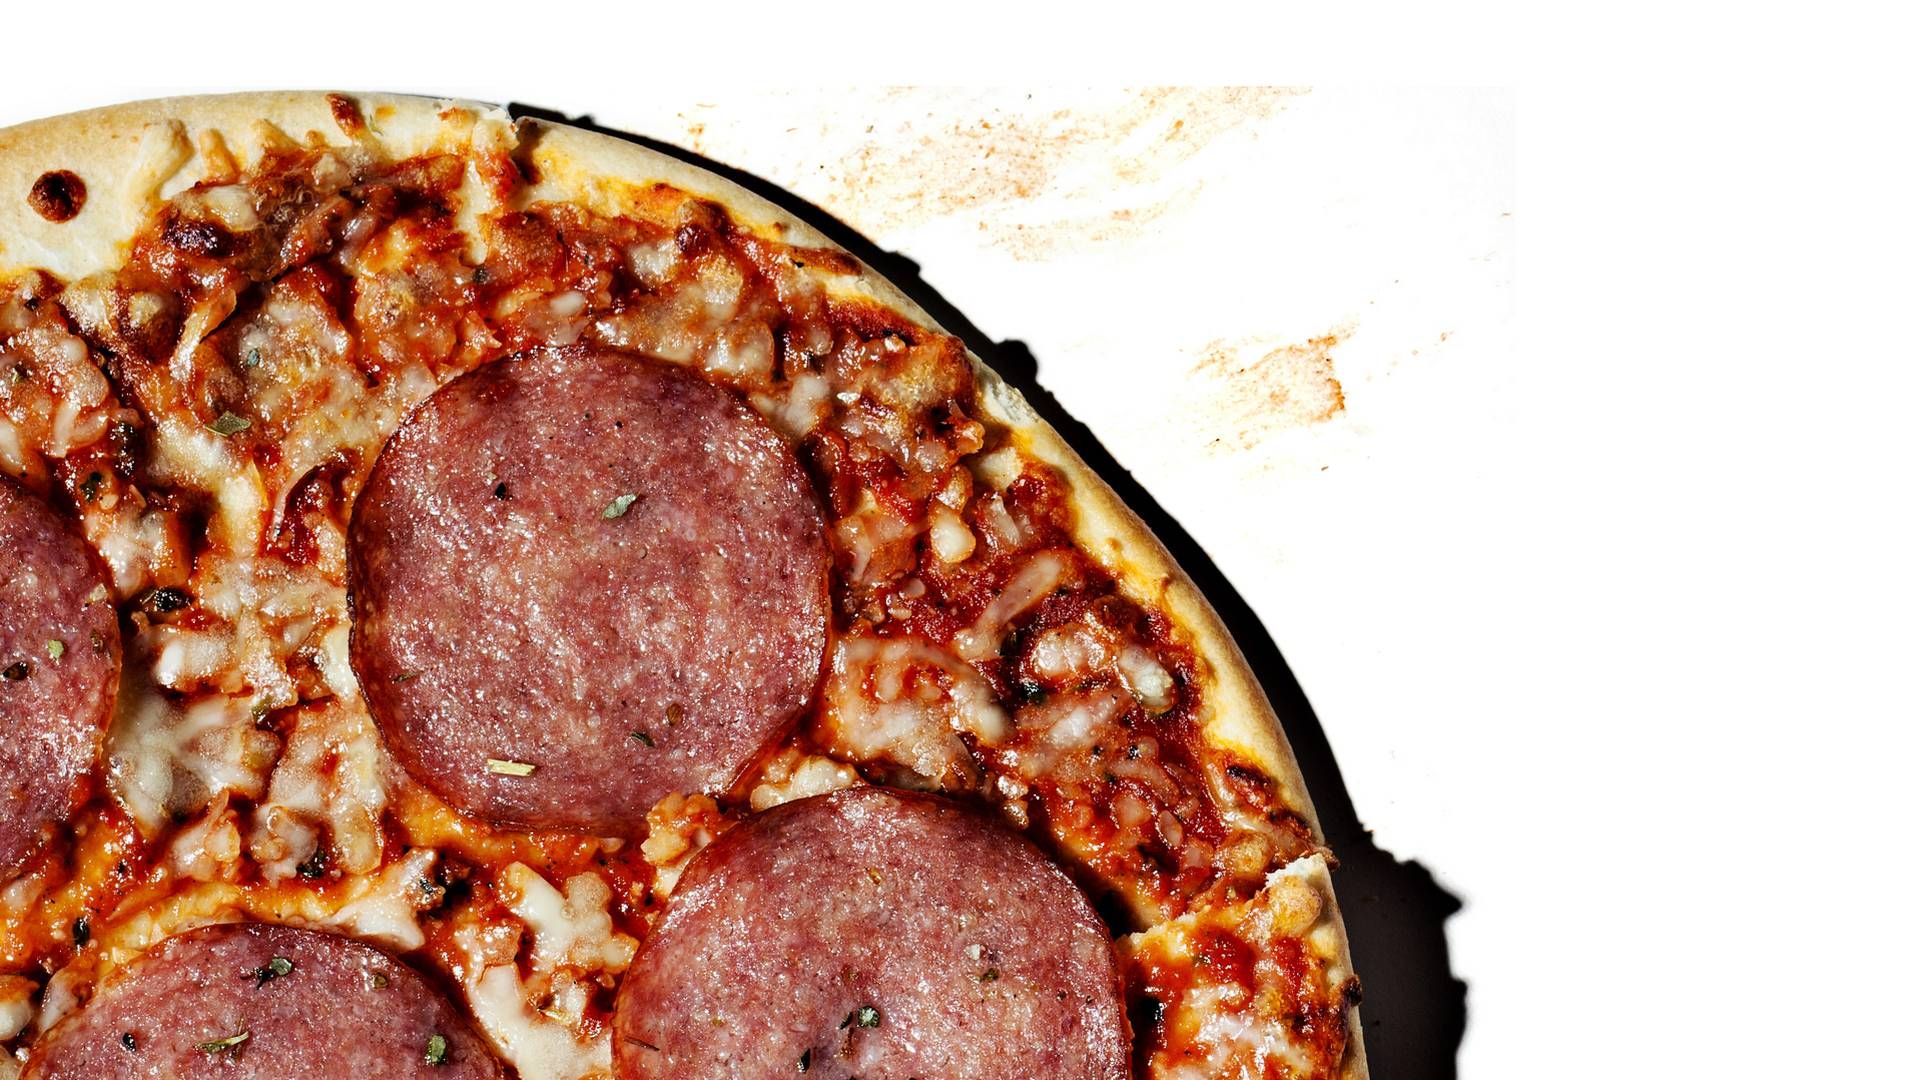 Frysepizza ligger på en klar førsteplads over danskernes foretrukne færdigretter, viser analyse fra Coop. | Foto: Rune Pedersen